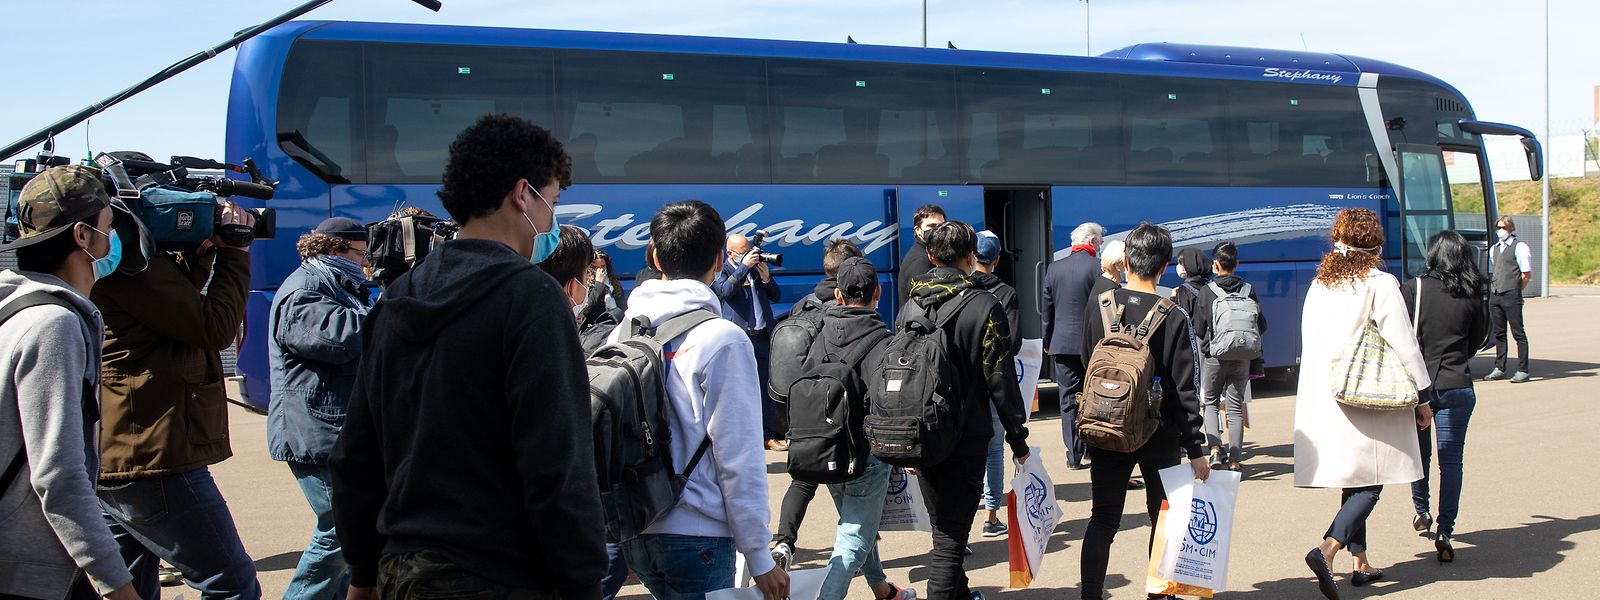 Zwölf minderjährige Flüchtlinge wurden Mitte April von den griechischen Inseln nach Luxemburg ausgeflogen. Nach der Landung am Flughafen Findel ging es per Bus in eine Unterkunft der Caritas in Munshausen.